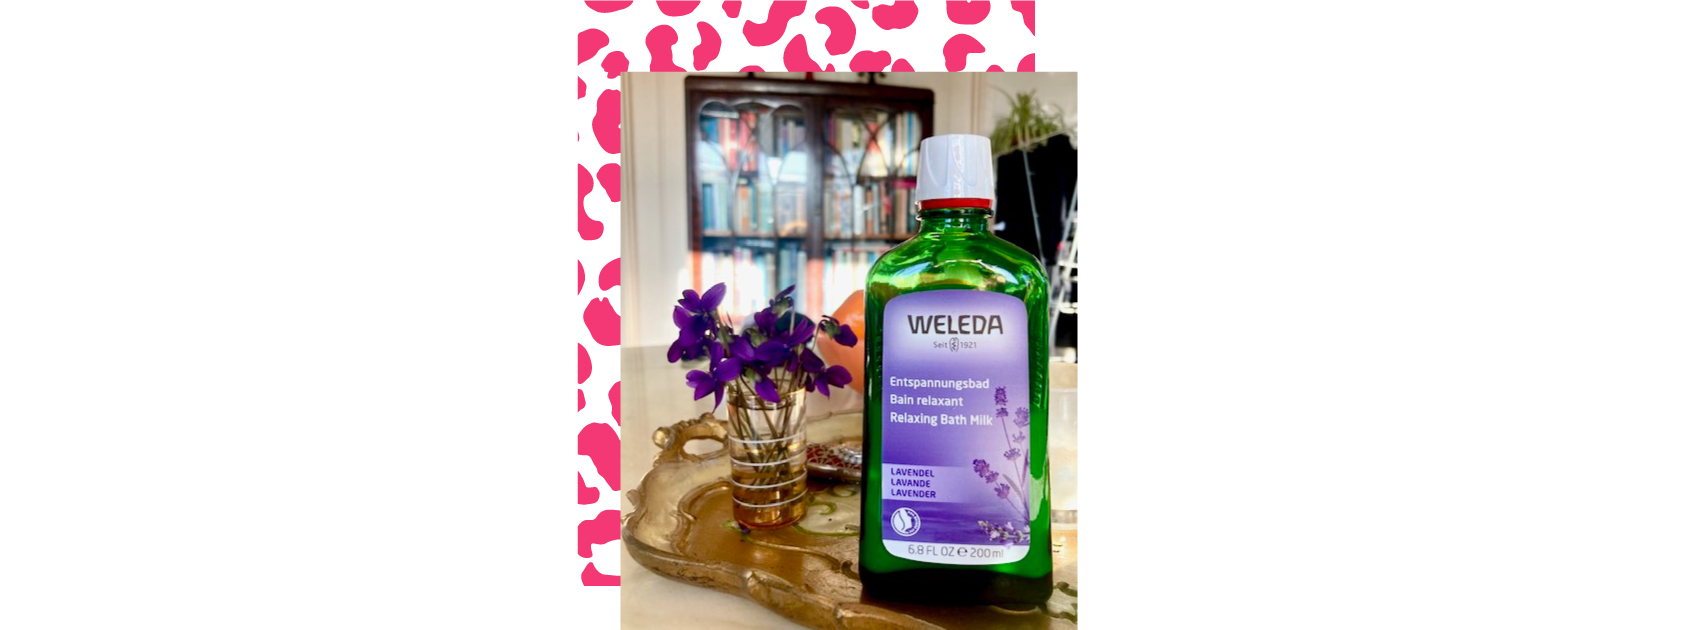 bottle of relaxing bath milk by weleda